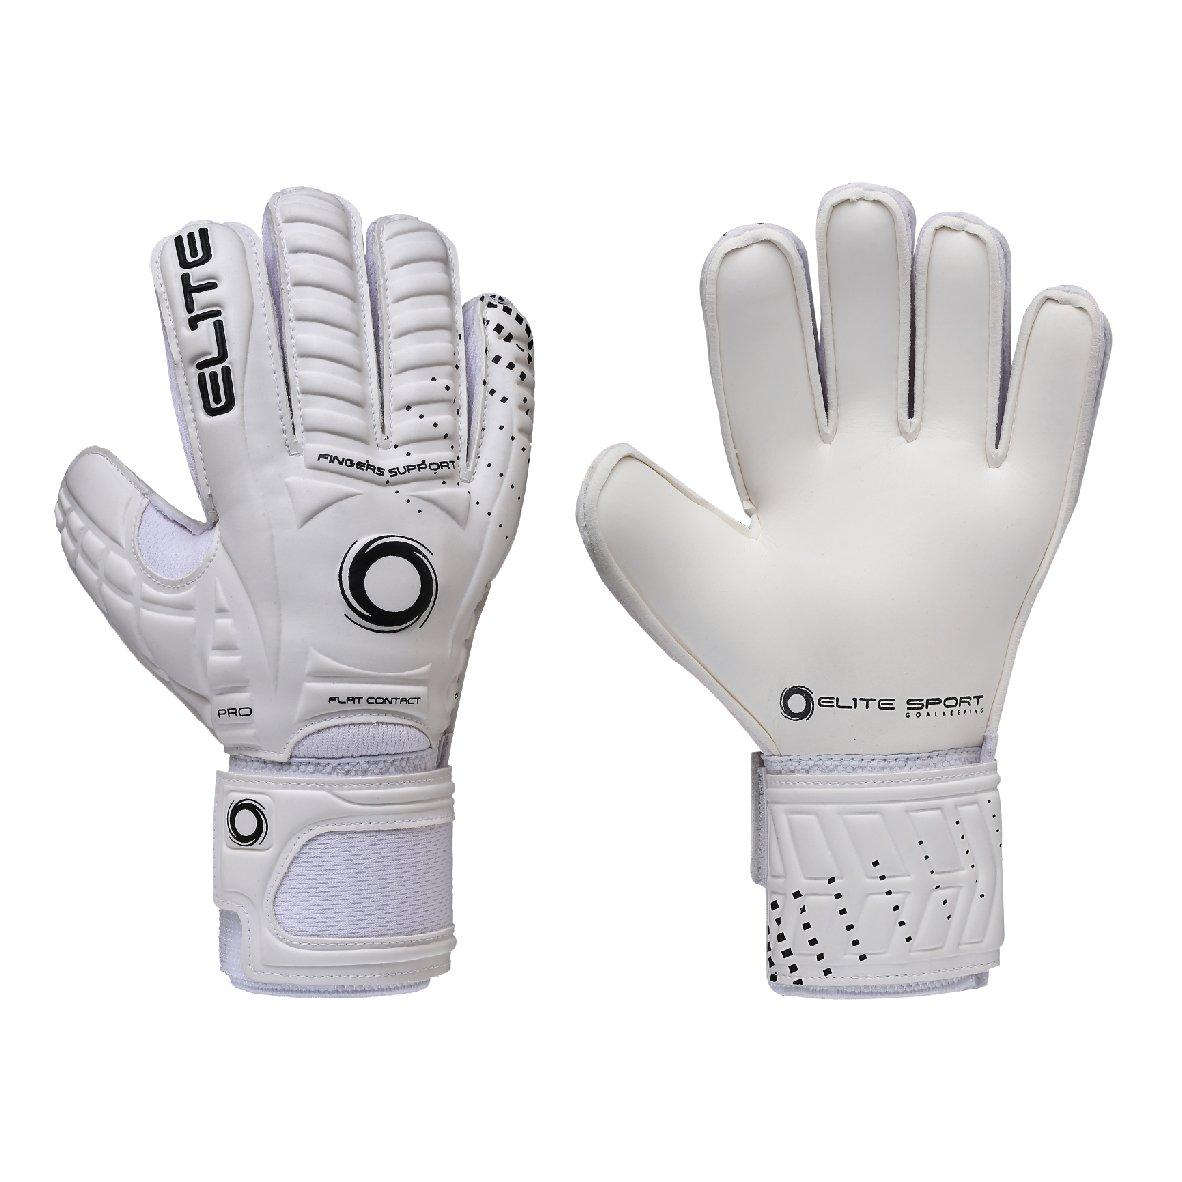 Перчатки вратарские Warrior белые, размер 5 Elite Sports, белый цена и фото